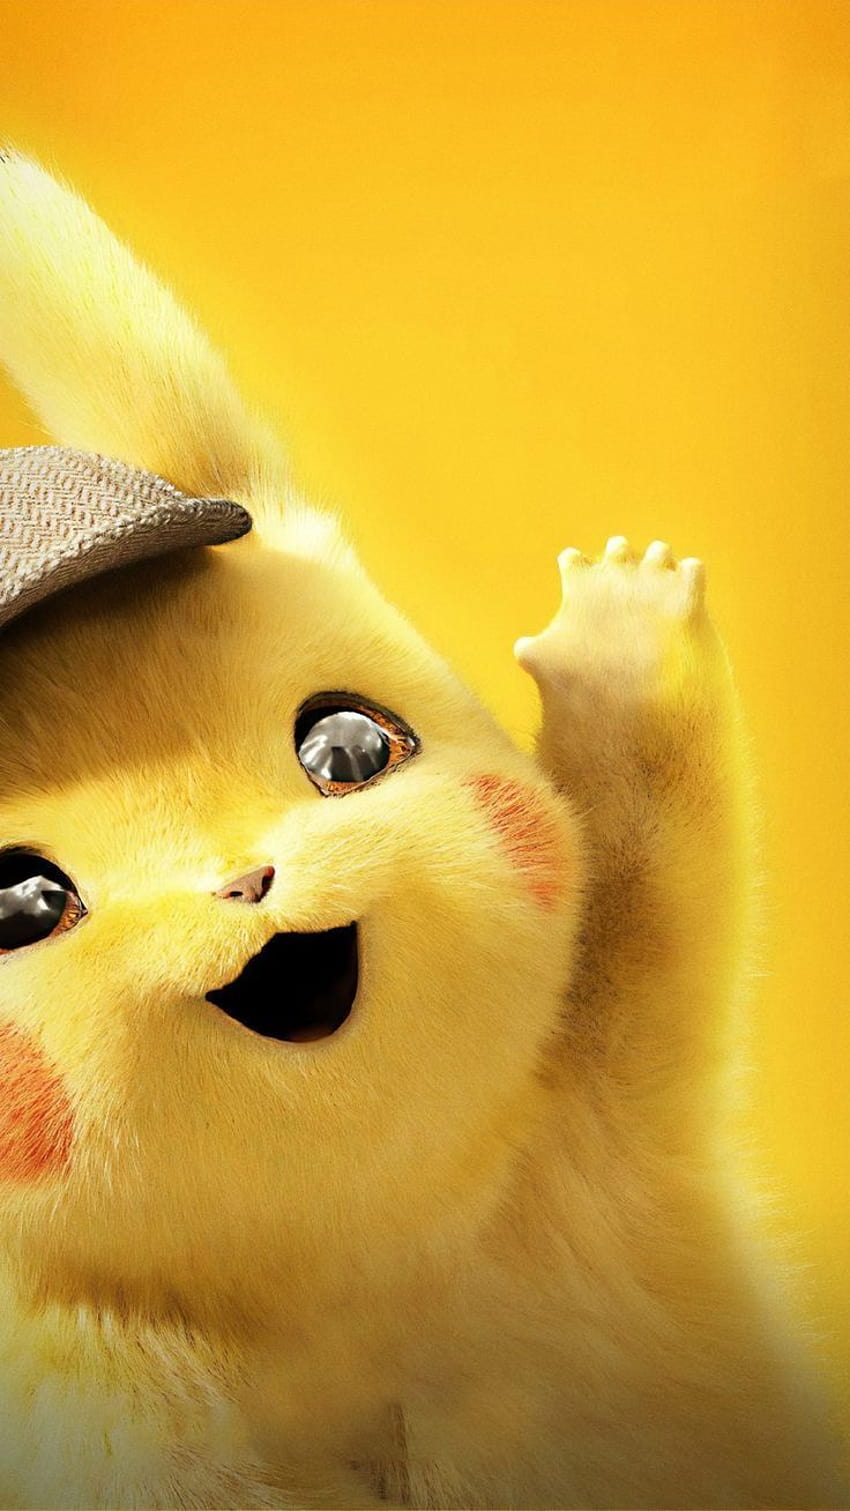 Pokémon Detective Pikachu for iPhone 7 HD phone wallpaper | Pxfuel